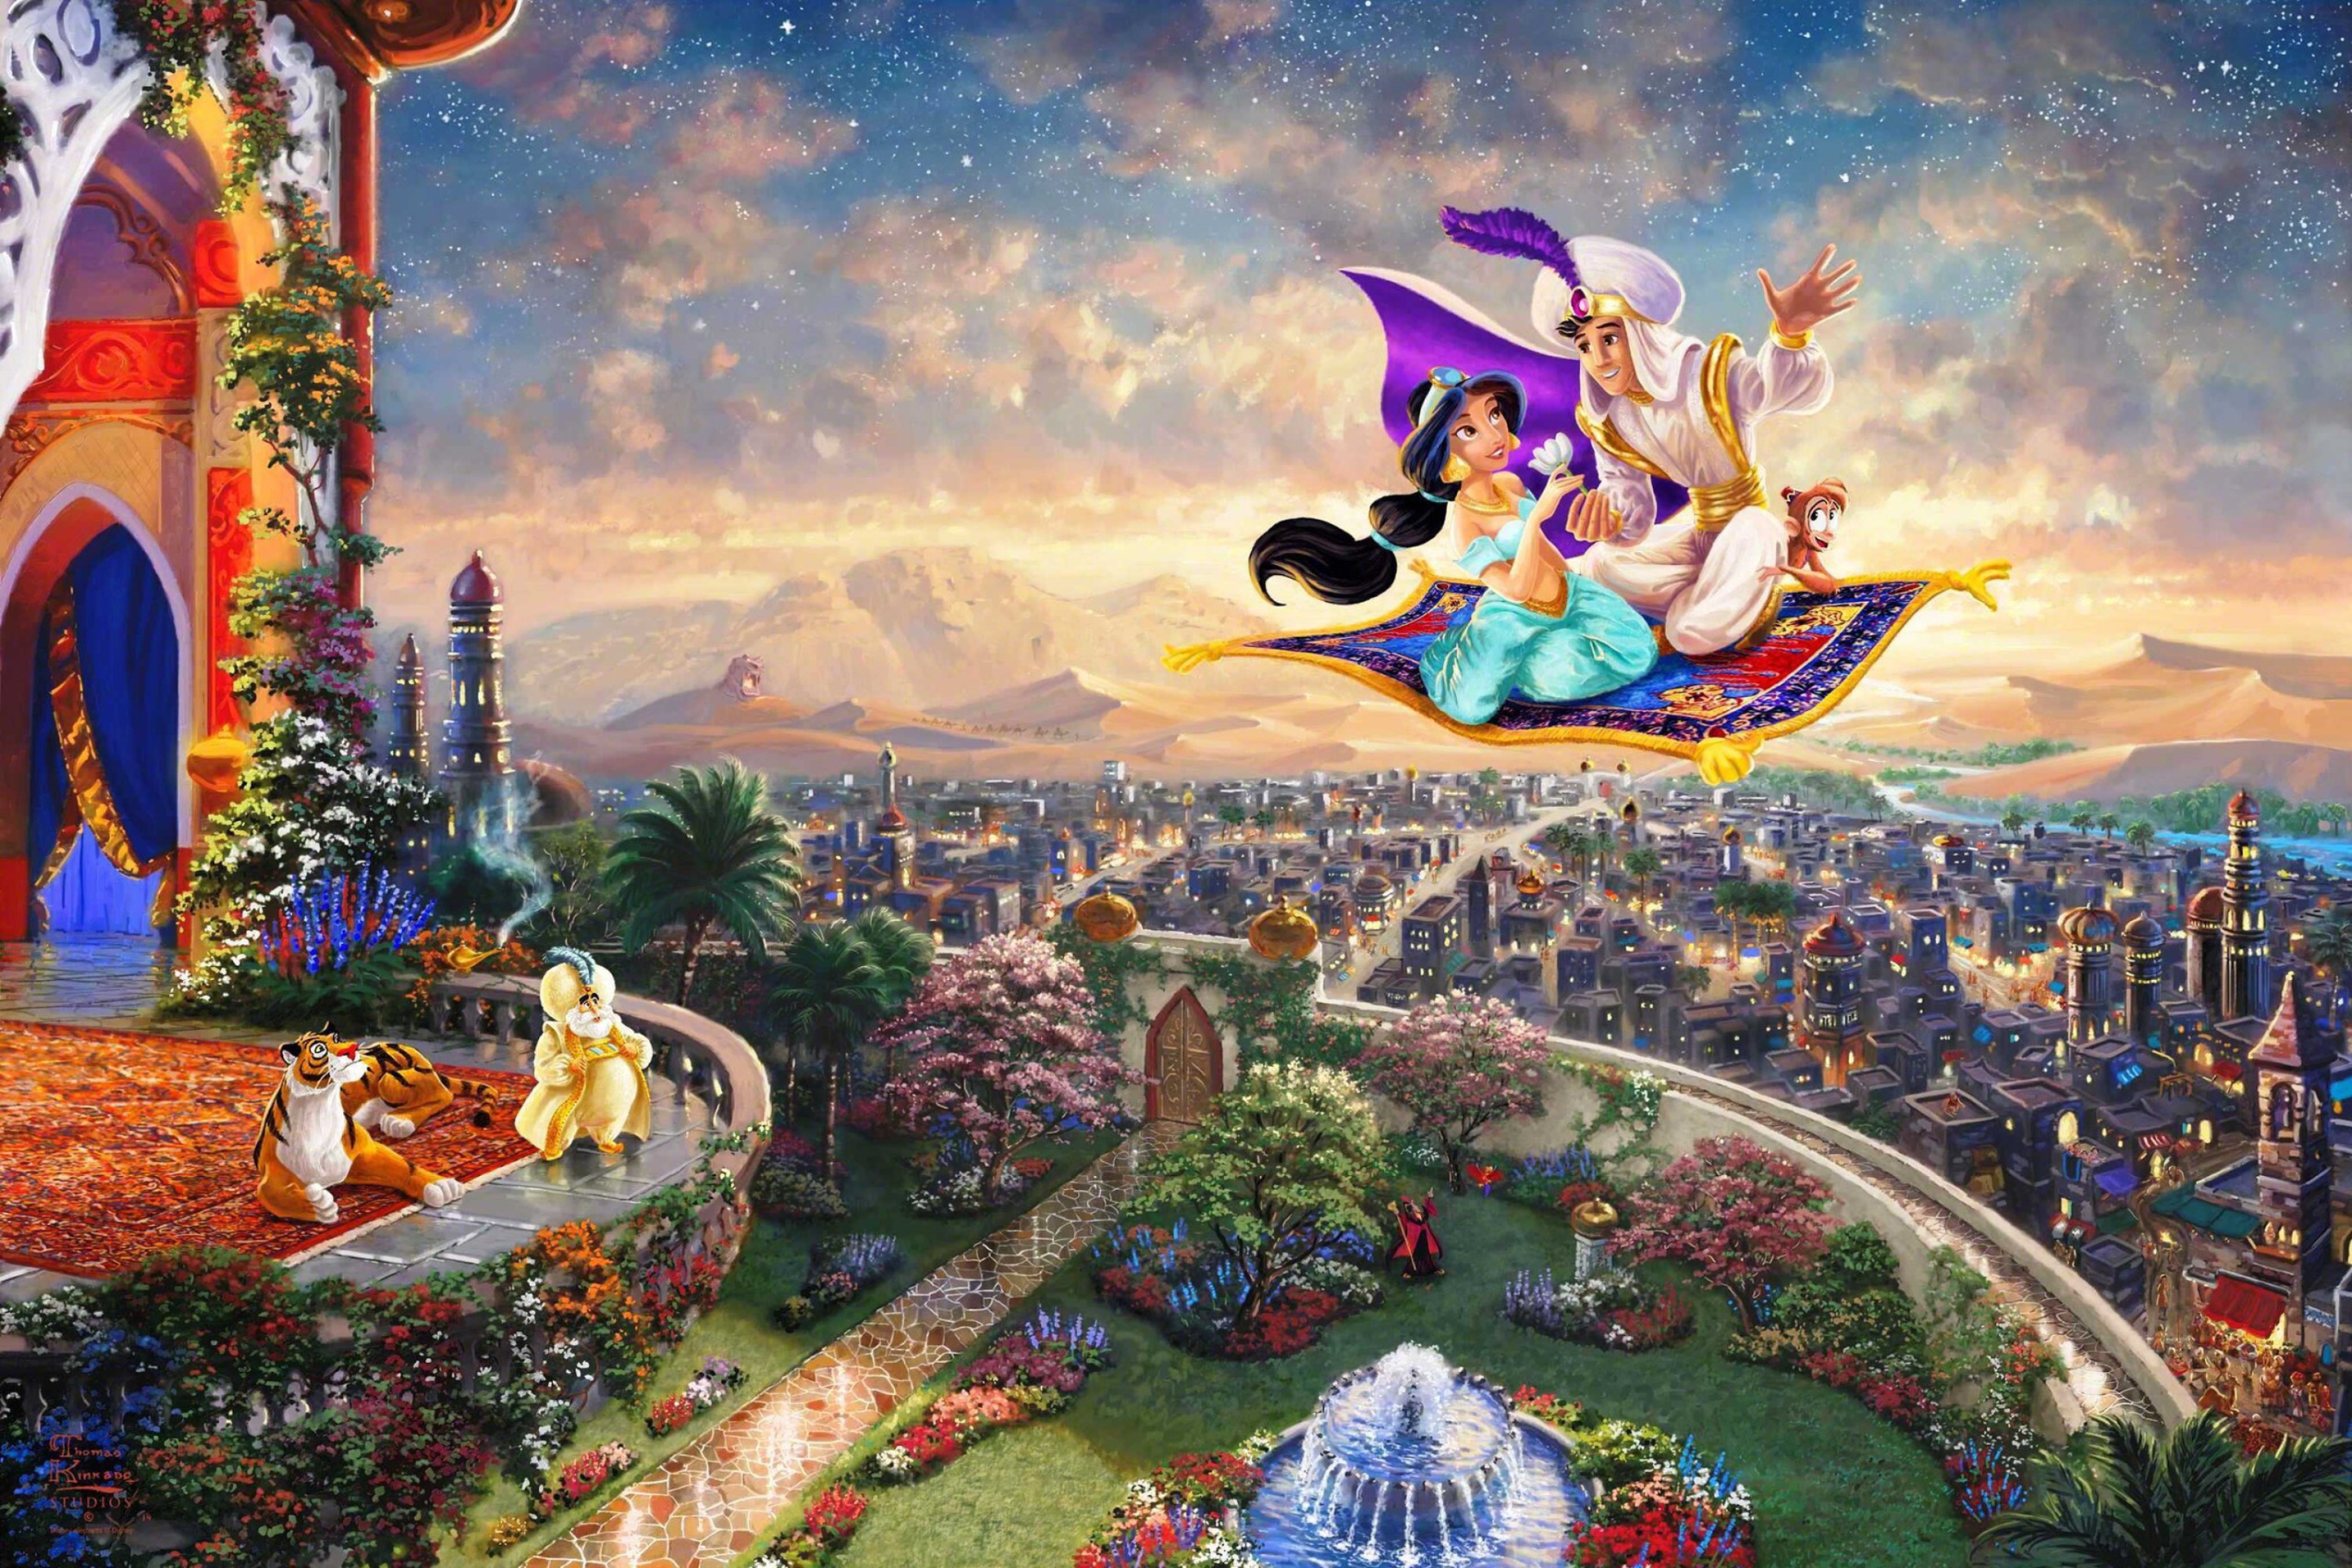 Aladdin wallpaper 2880x1920